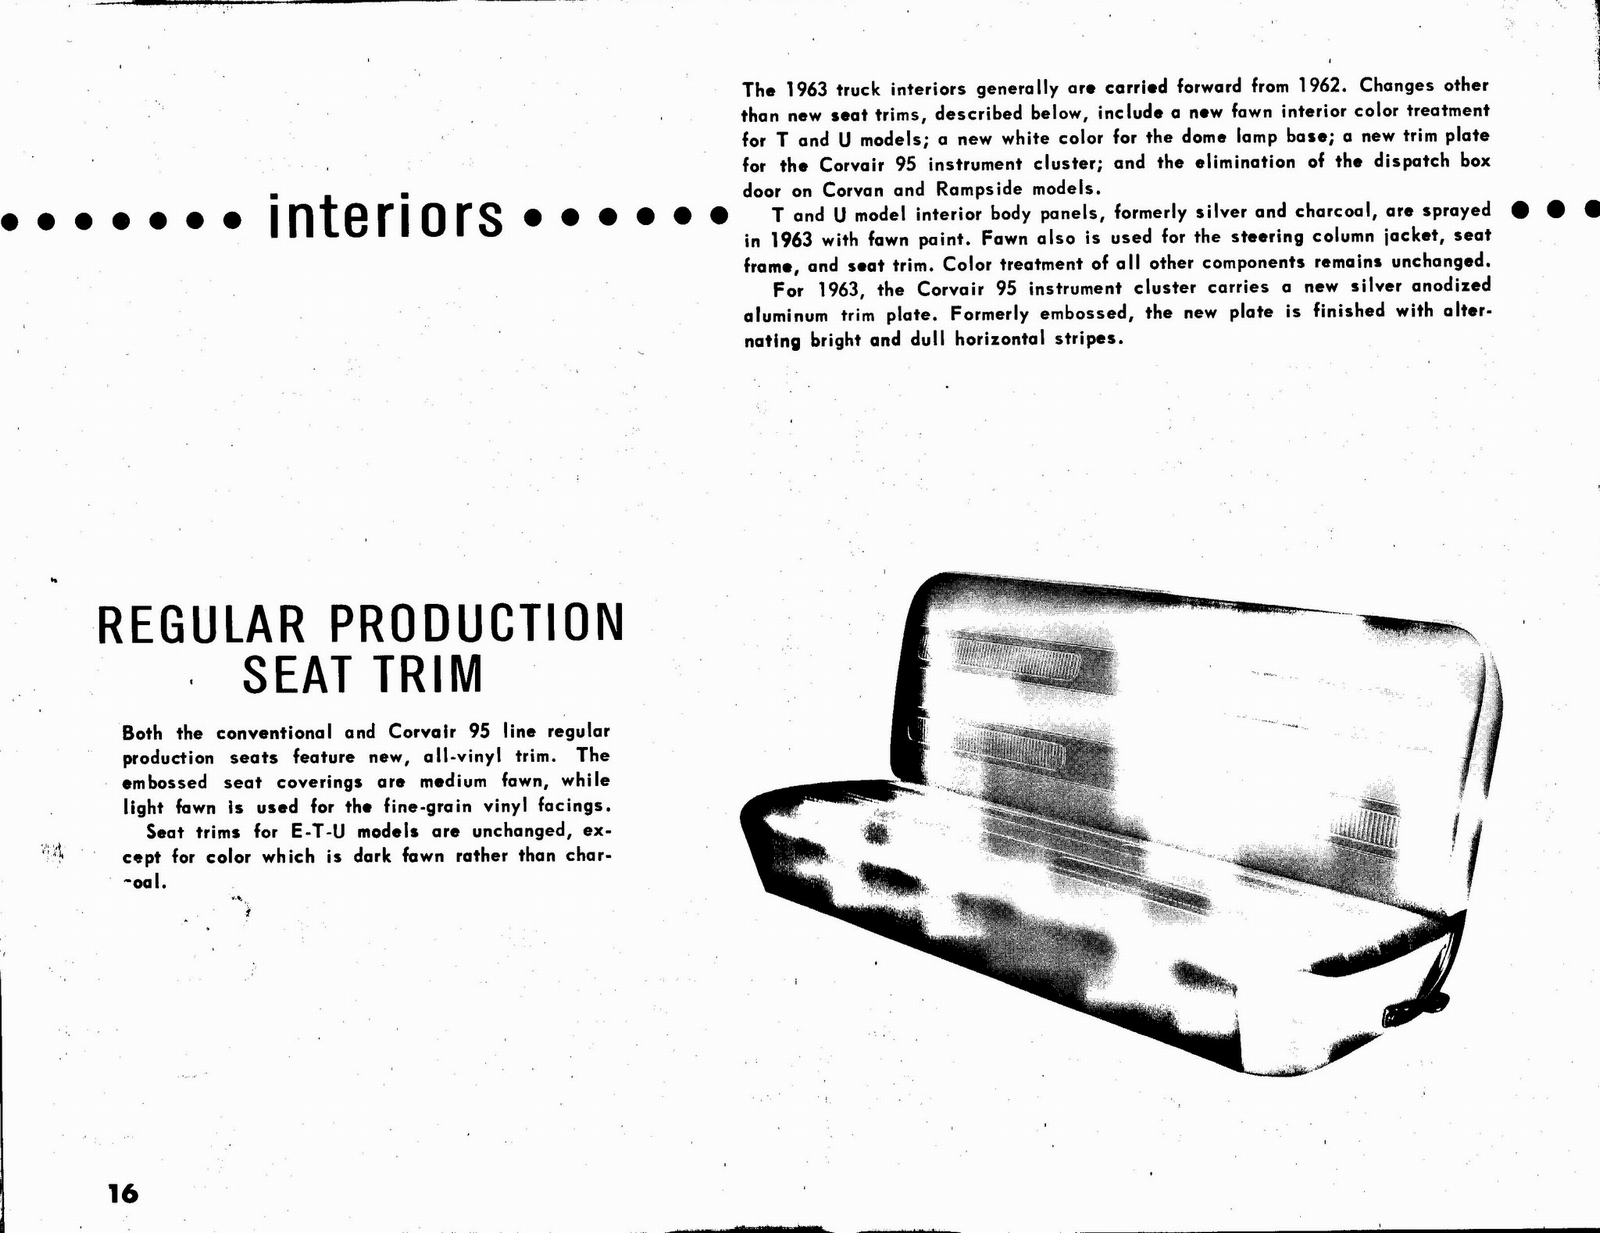 n_1963 Chevrolet Truck Engineering Features-16.jpg